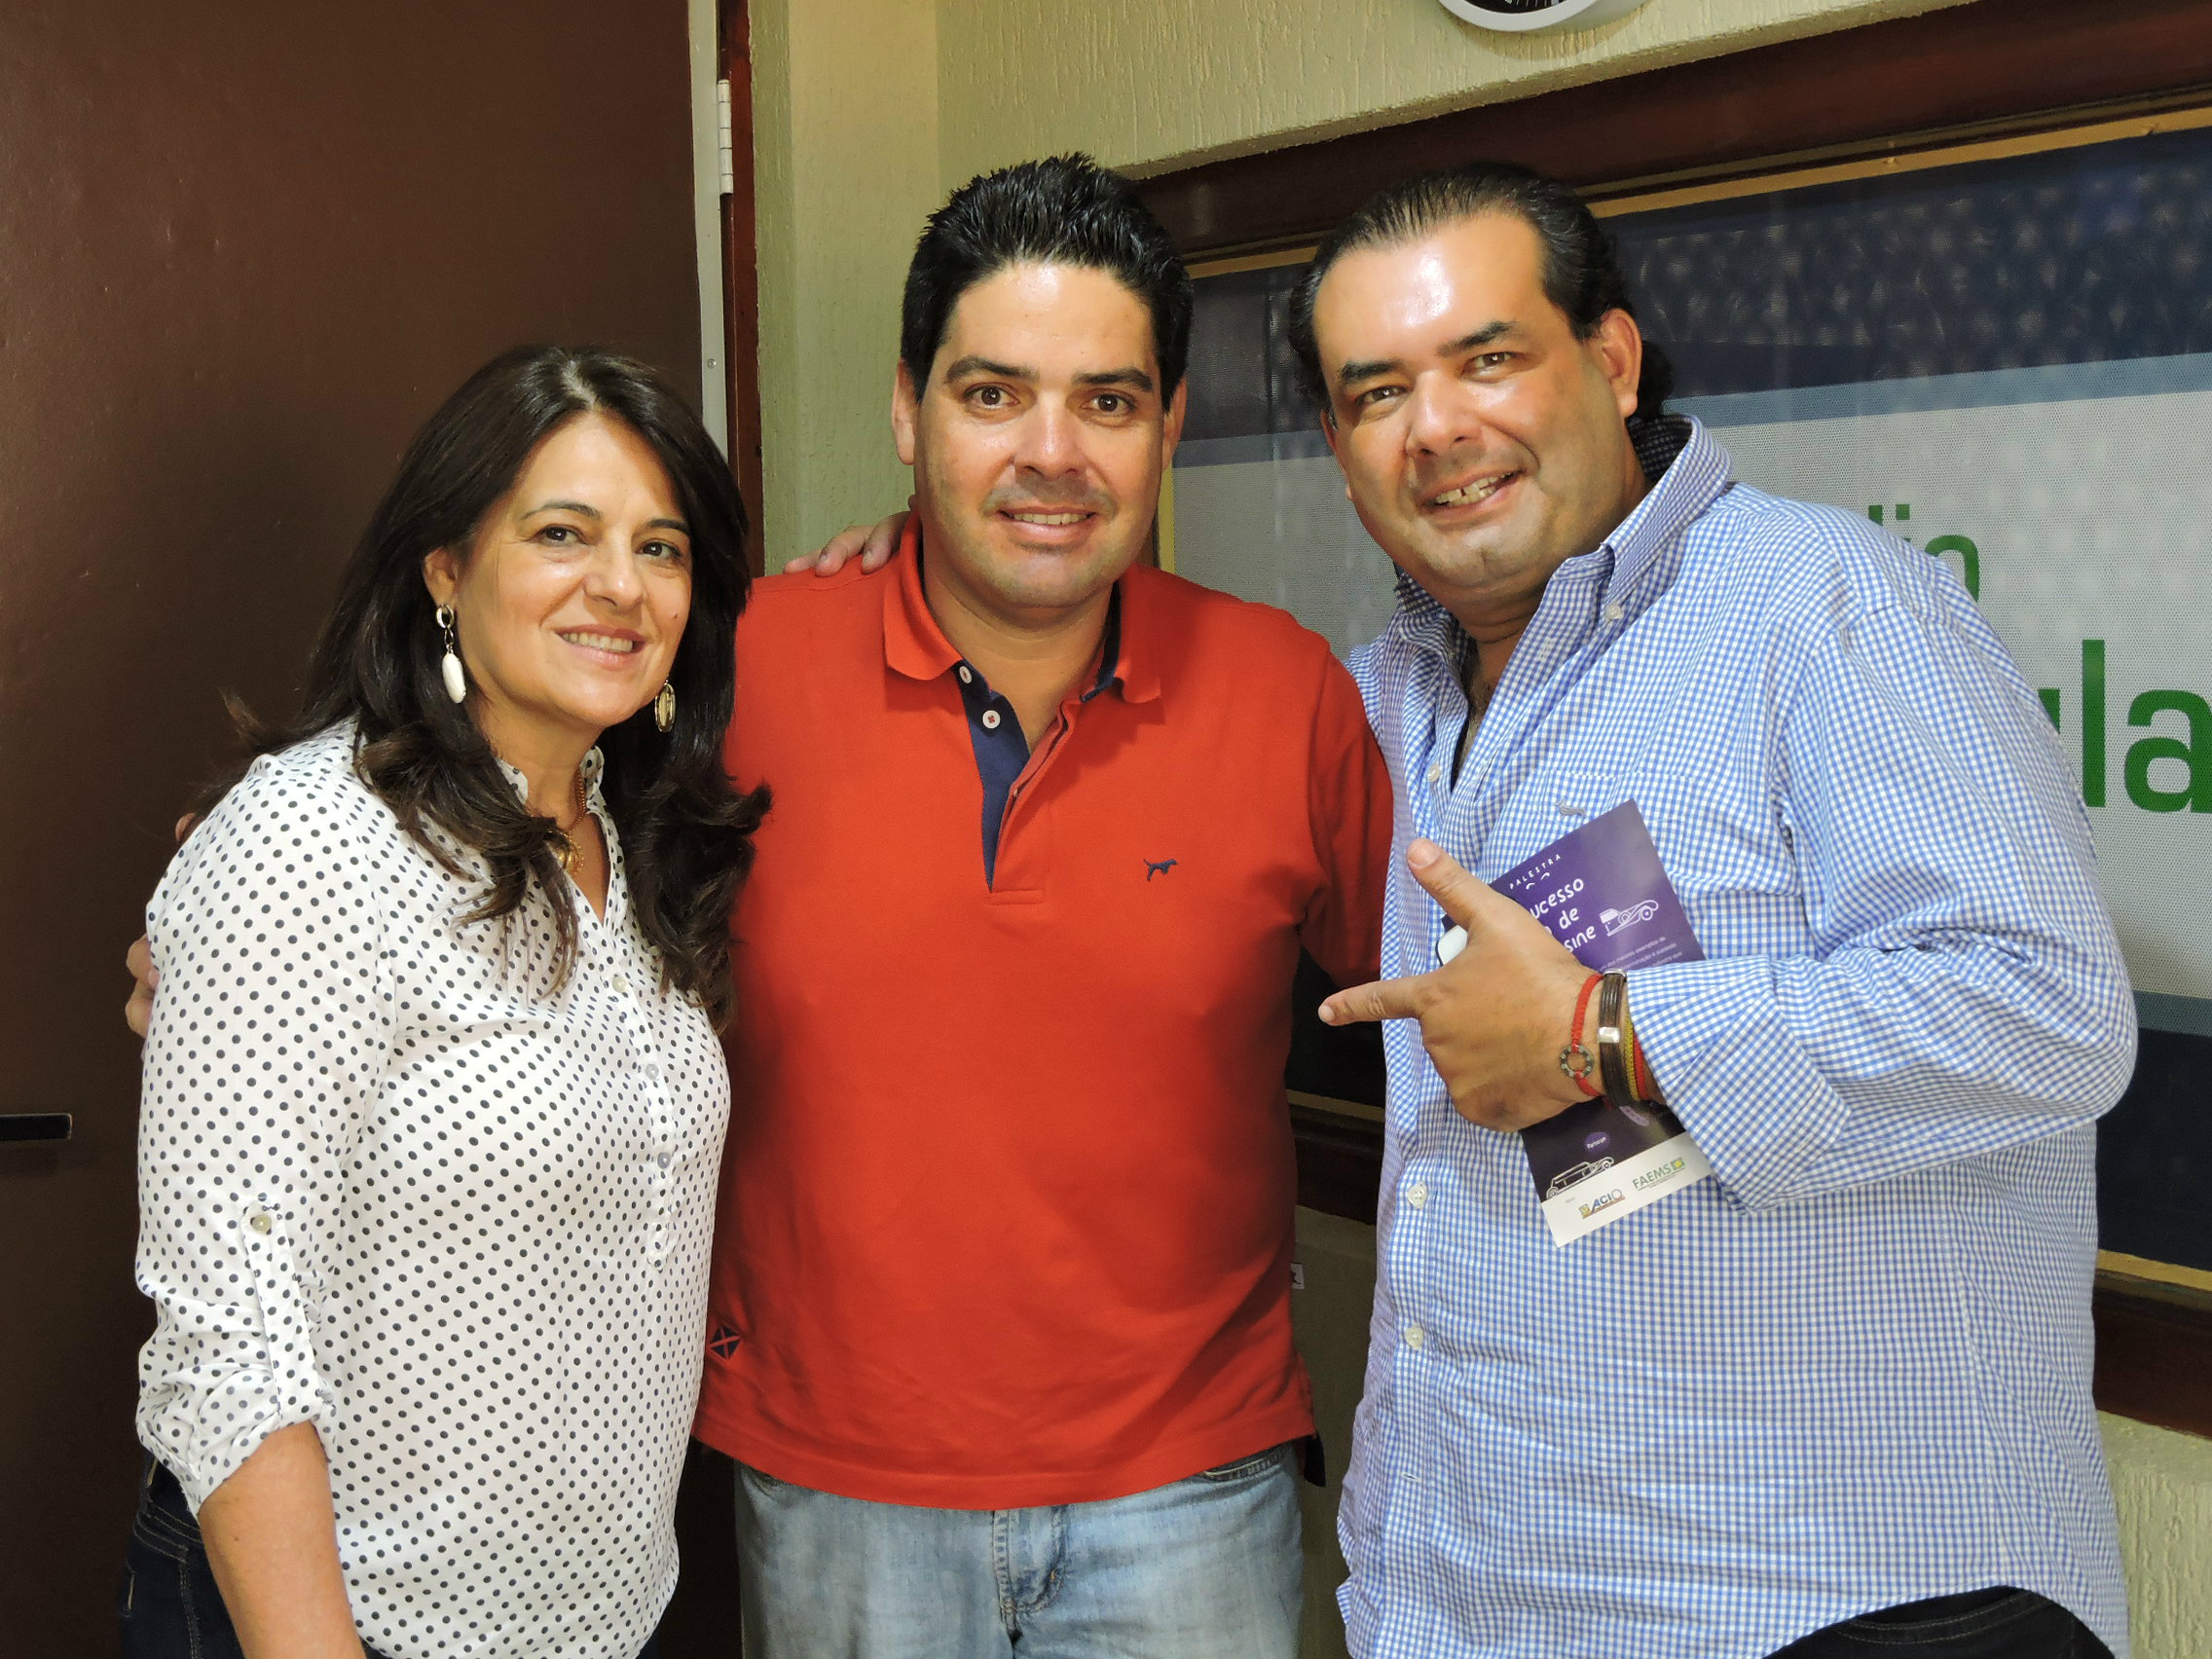 Foto: Rádio CaçulaA Diretora do Sebrae Josi Signori,  o Diretor da Rádio Caçula Fábio Campos e Jota de Miami 